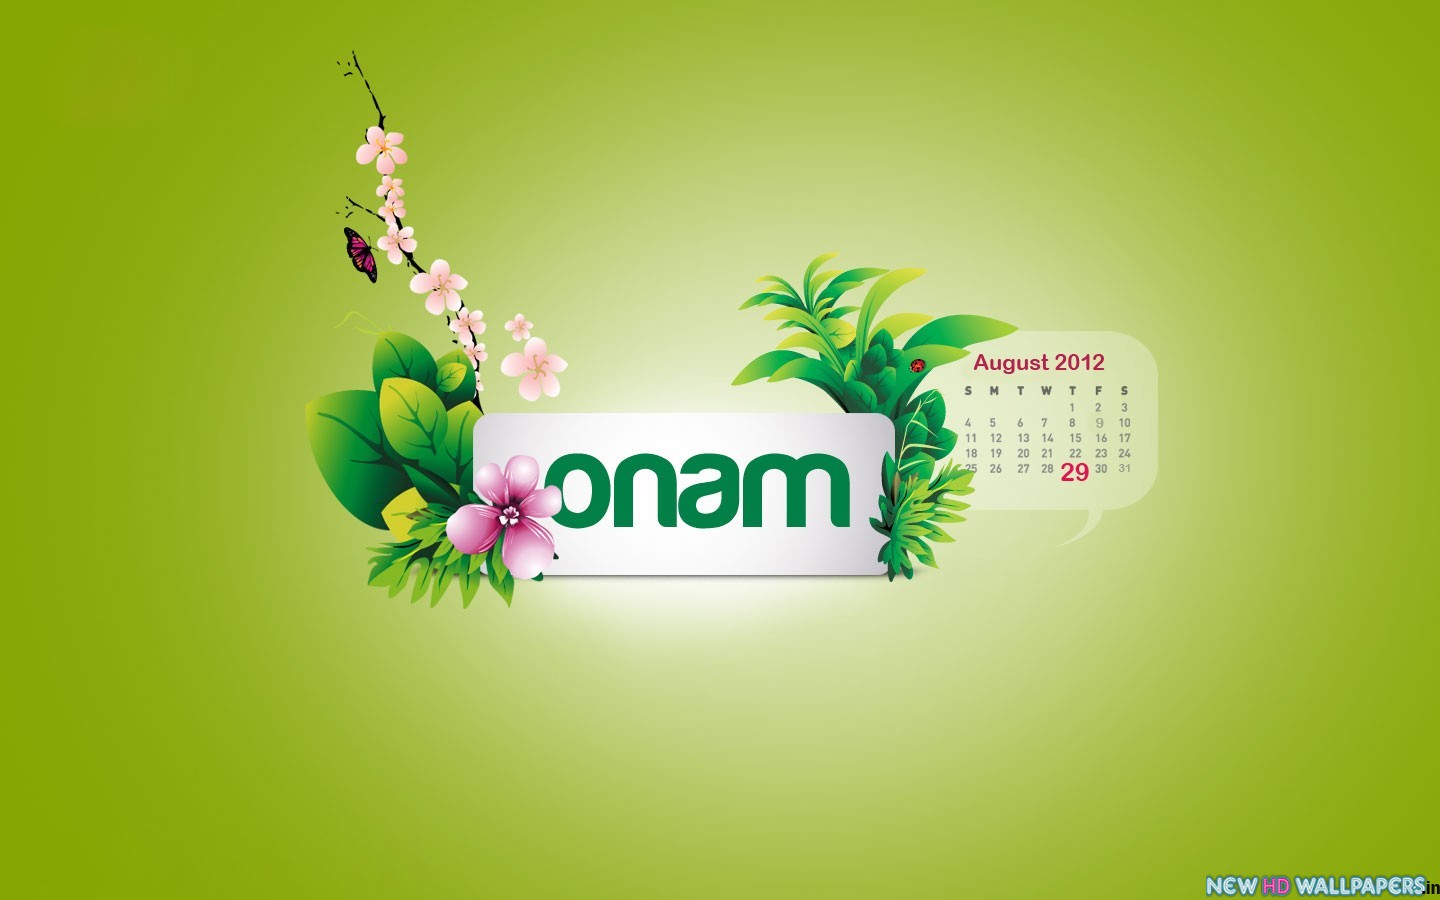 Onam wallpapers 2017 for onam festival ~ onam wishes 2019 ...